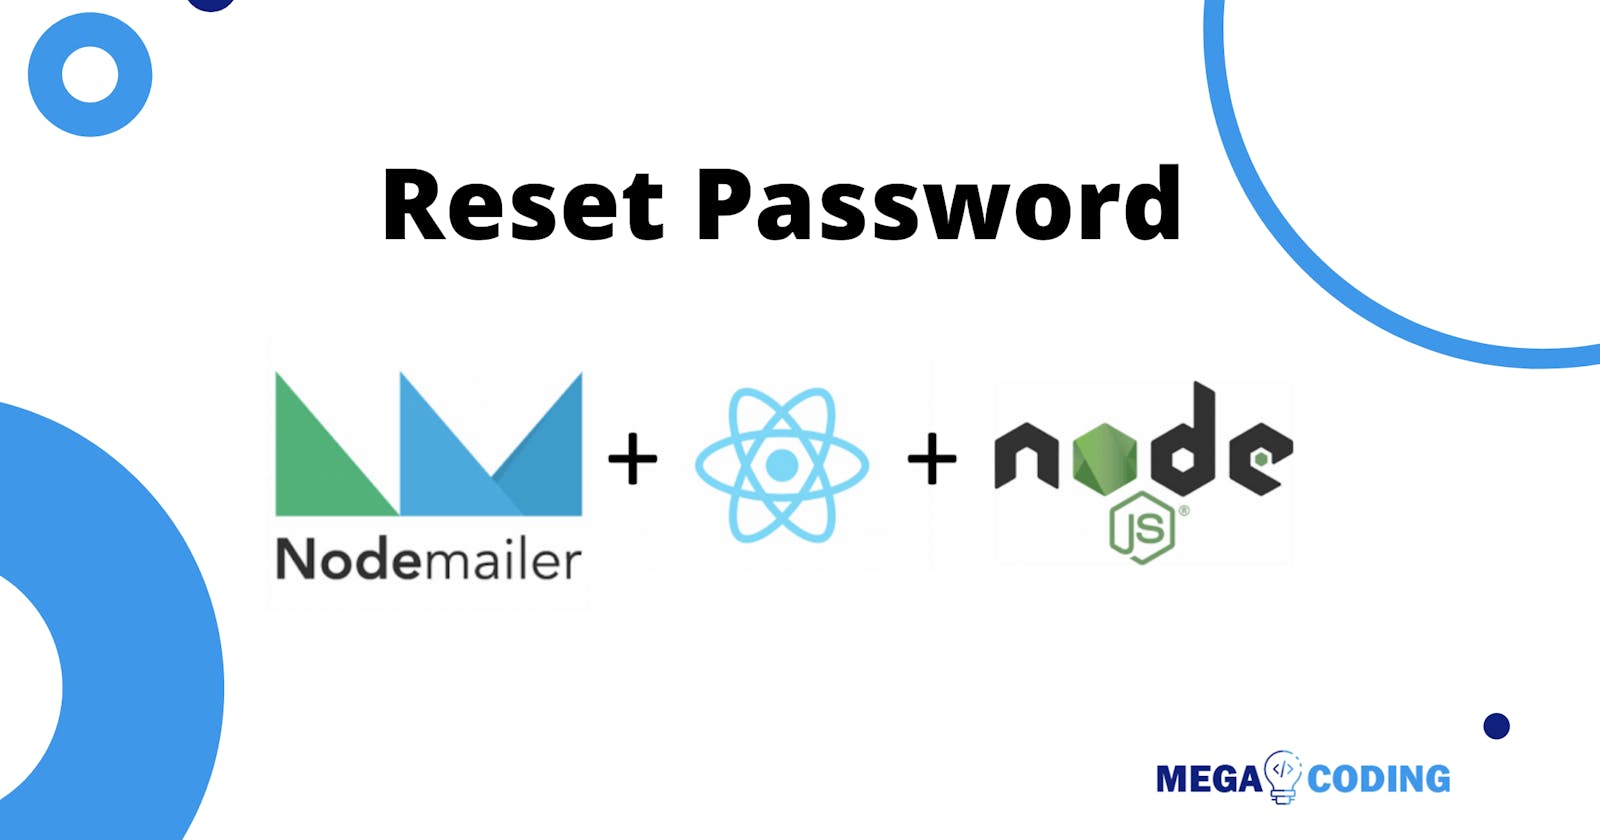 Reset Password with Nodejs & NodeMailer